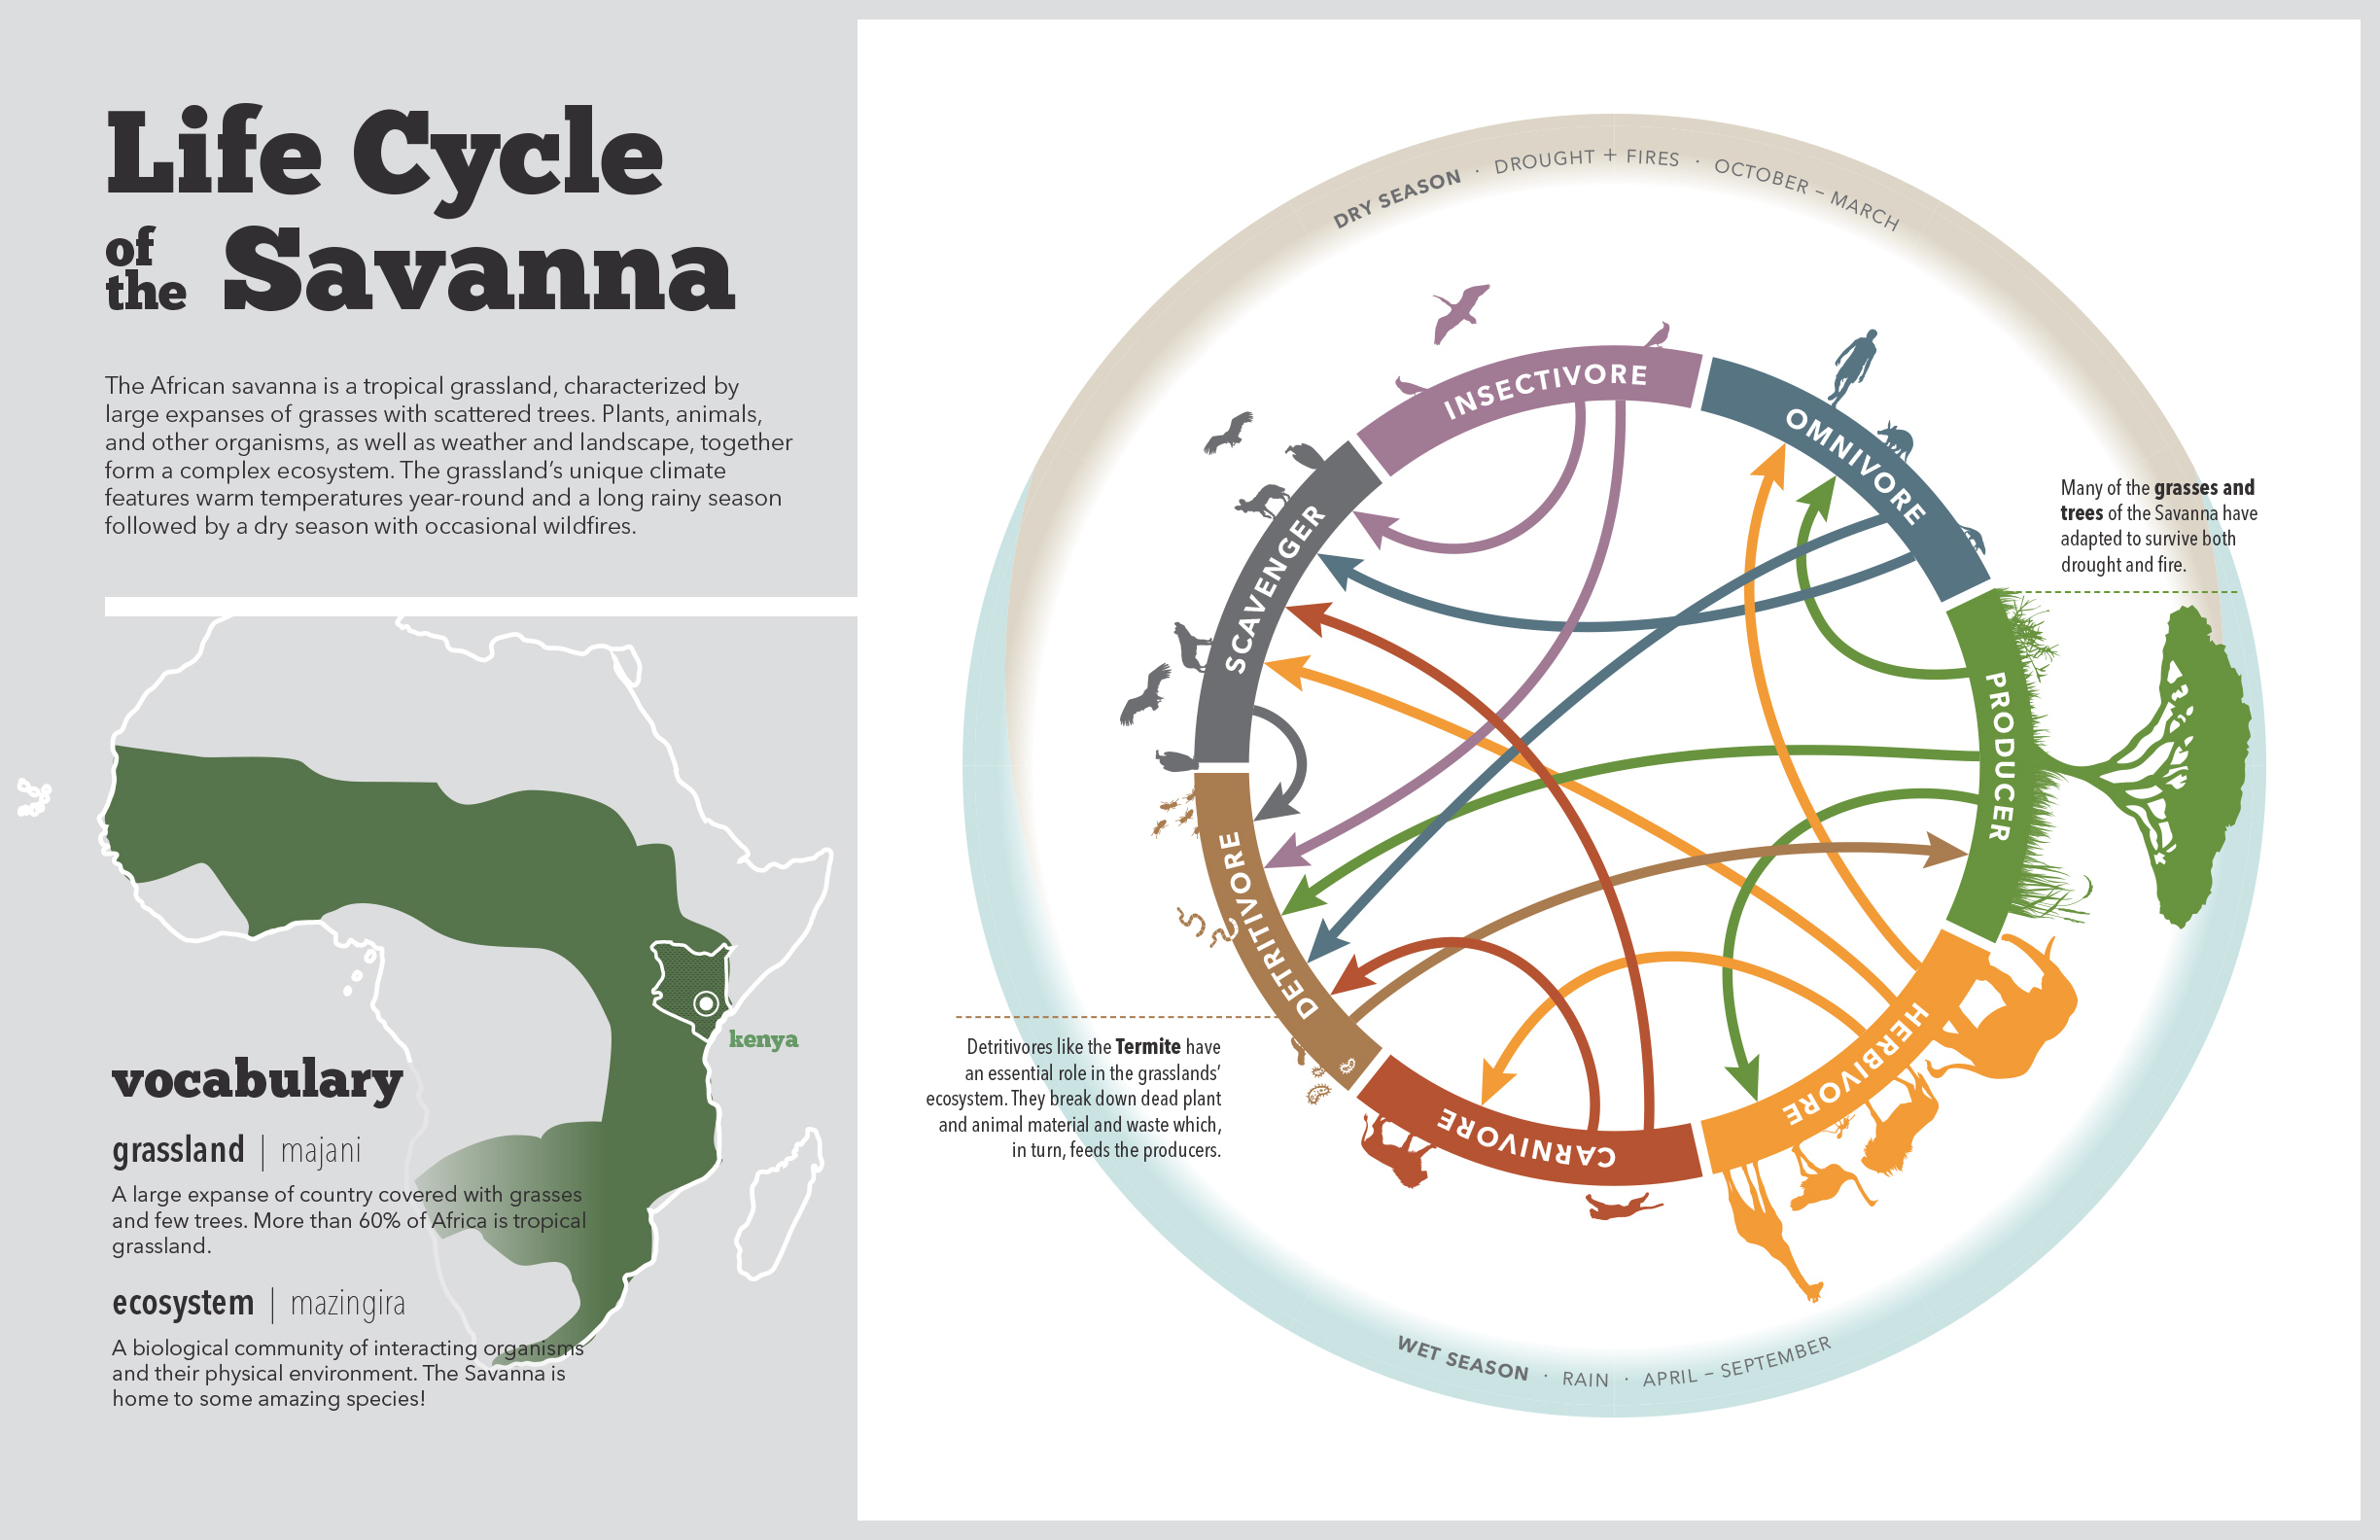 Life Cycle of the Savannah